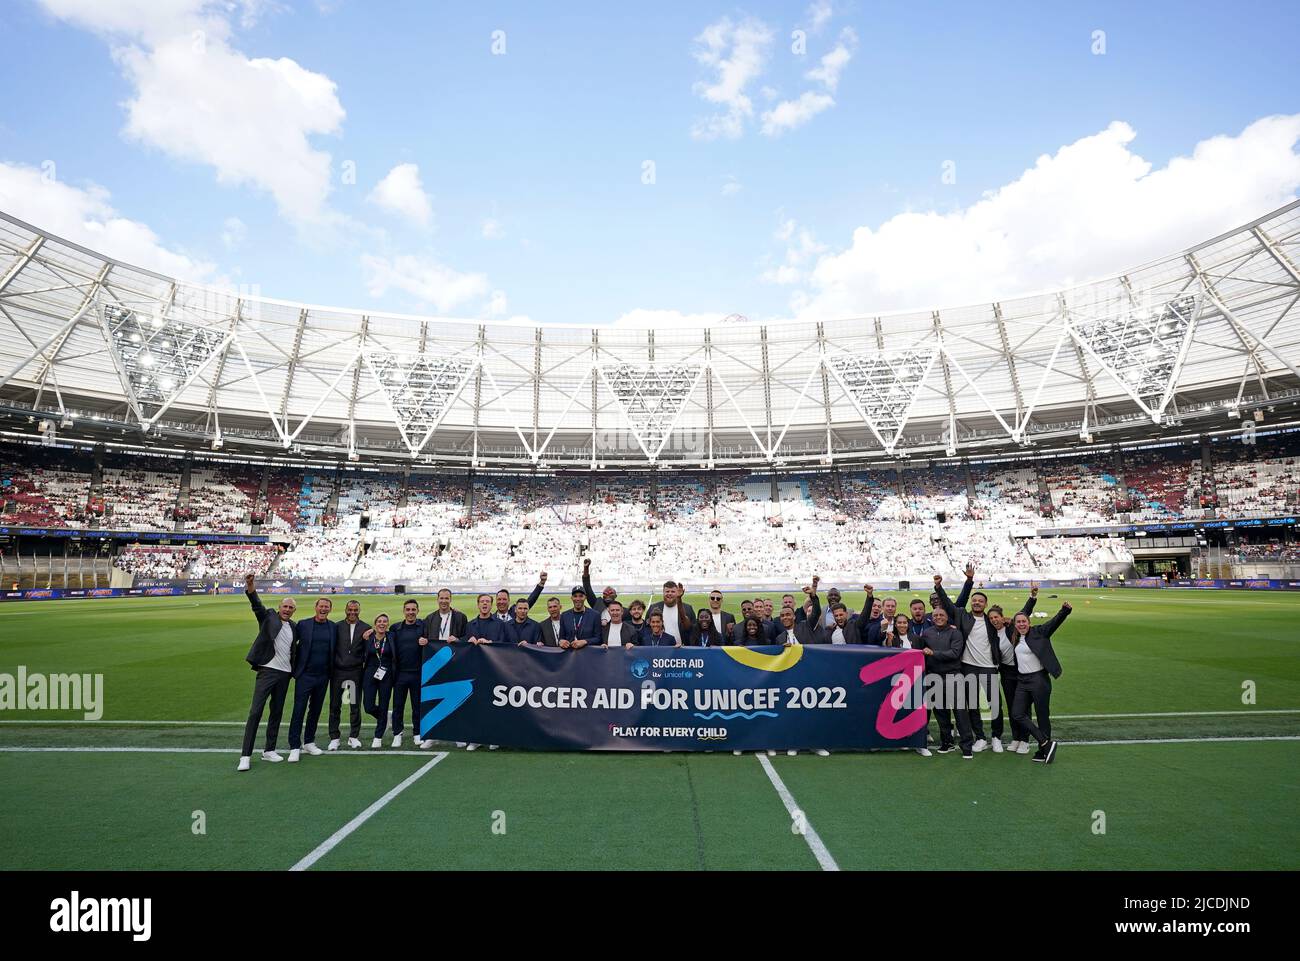 Les joueurs posent pour une photo de groupe avant le match de l'aide au football pour l'UNICEF au stade de Londres, Londres. Date de la photo: Dimanche 12 juin 2022. Banque D'Images